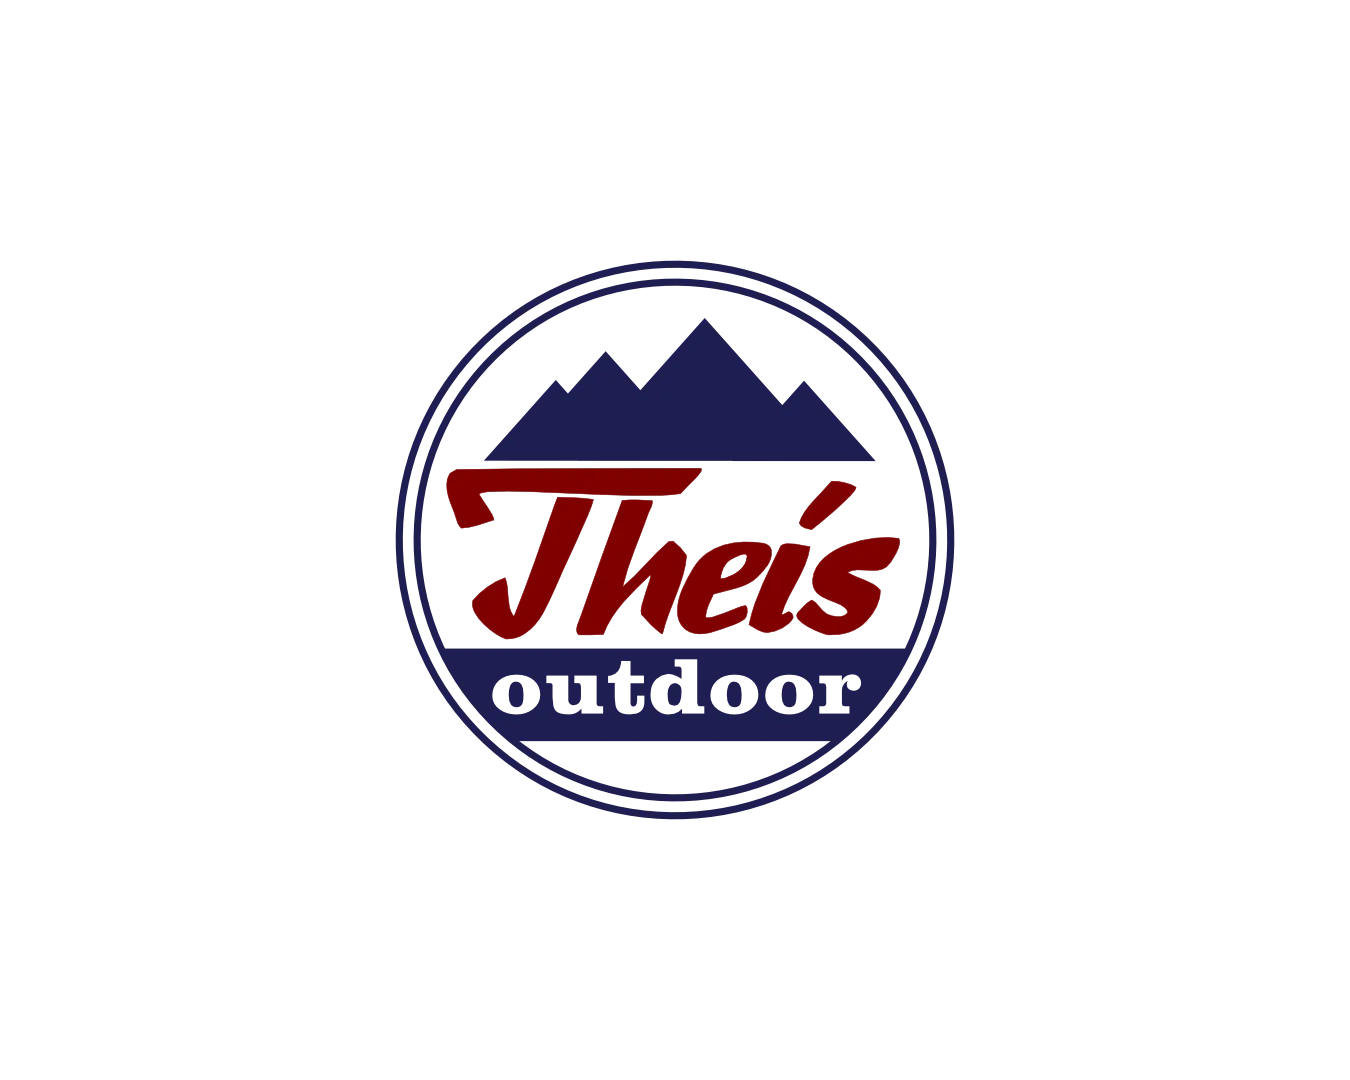 Theis Outdoor Hof Logo